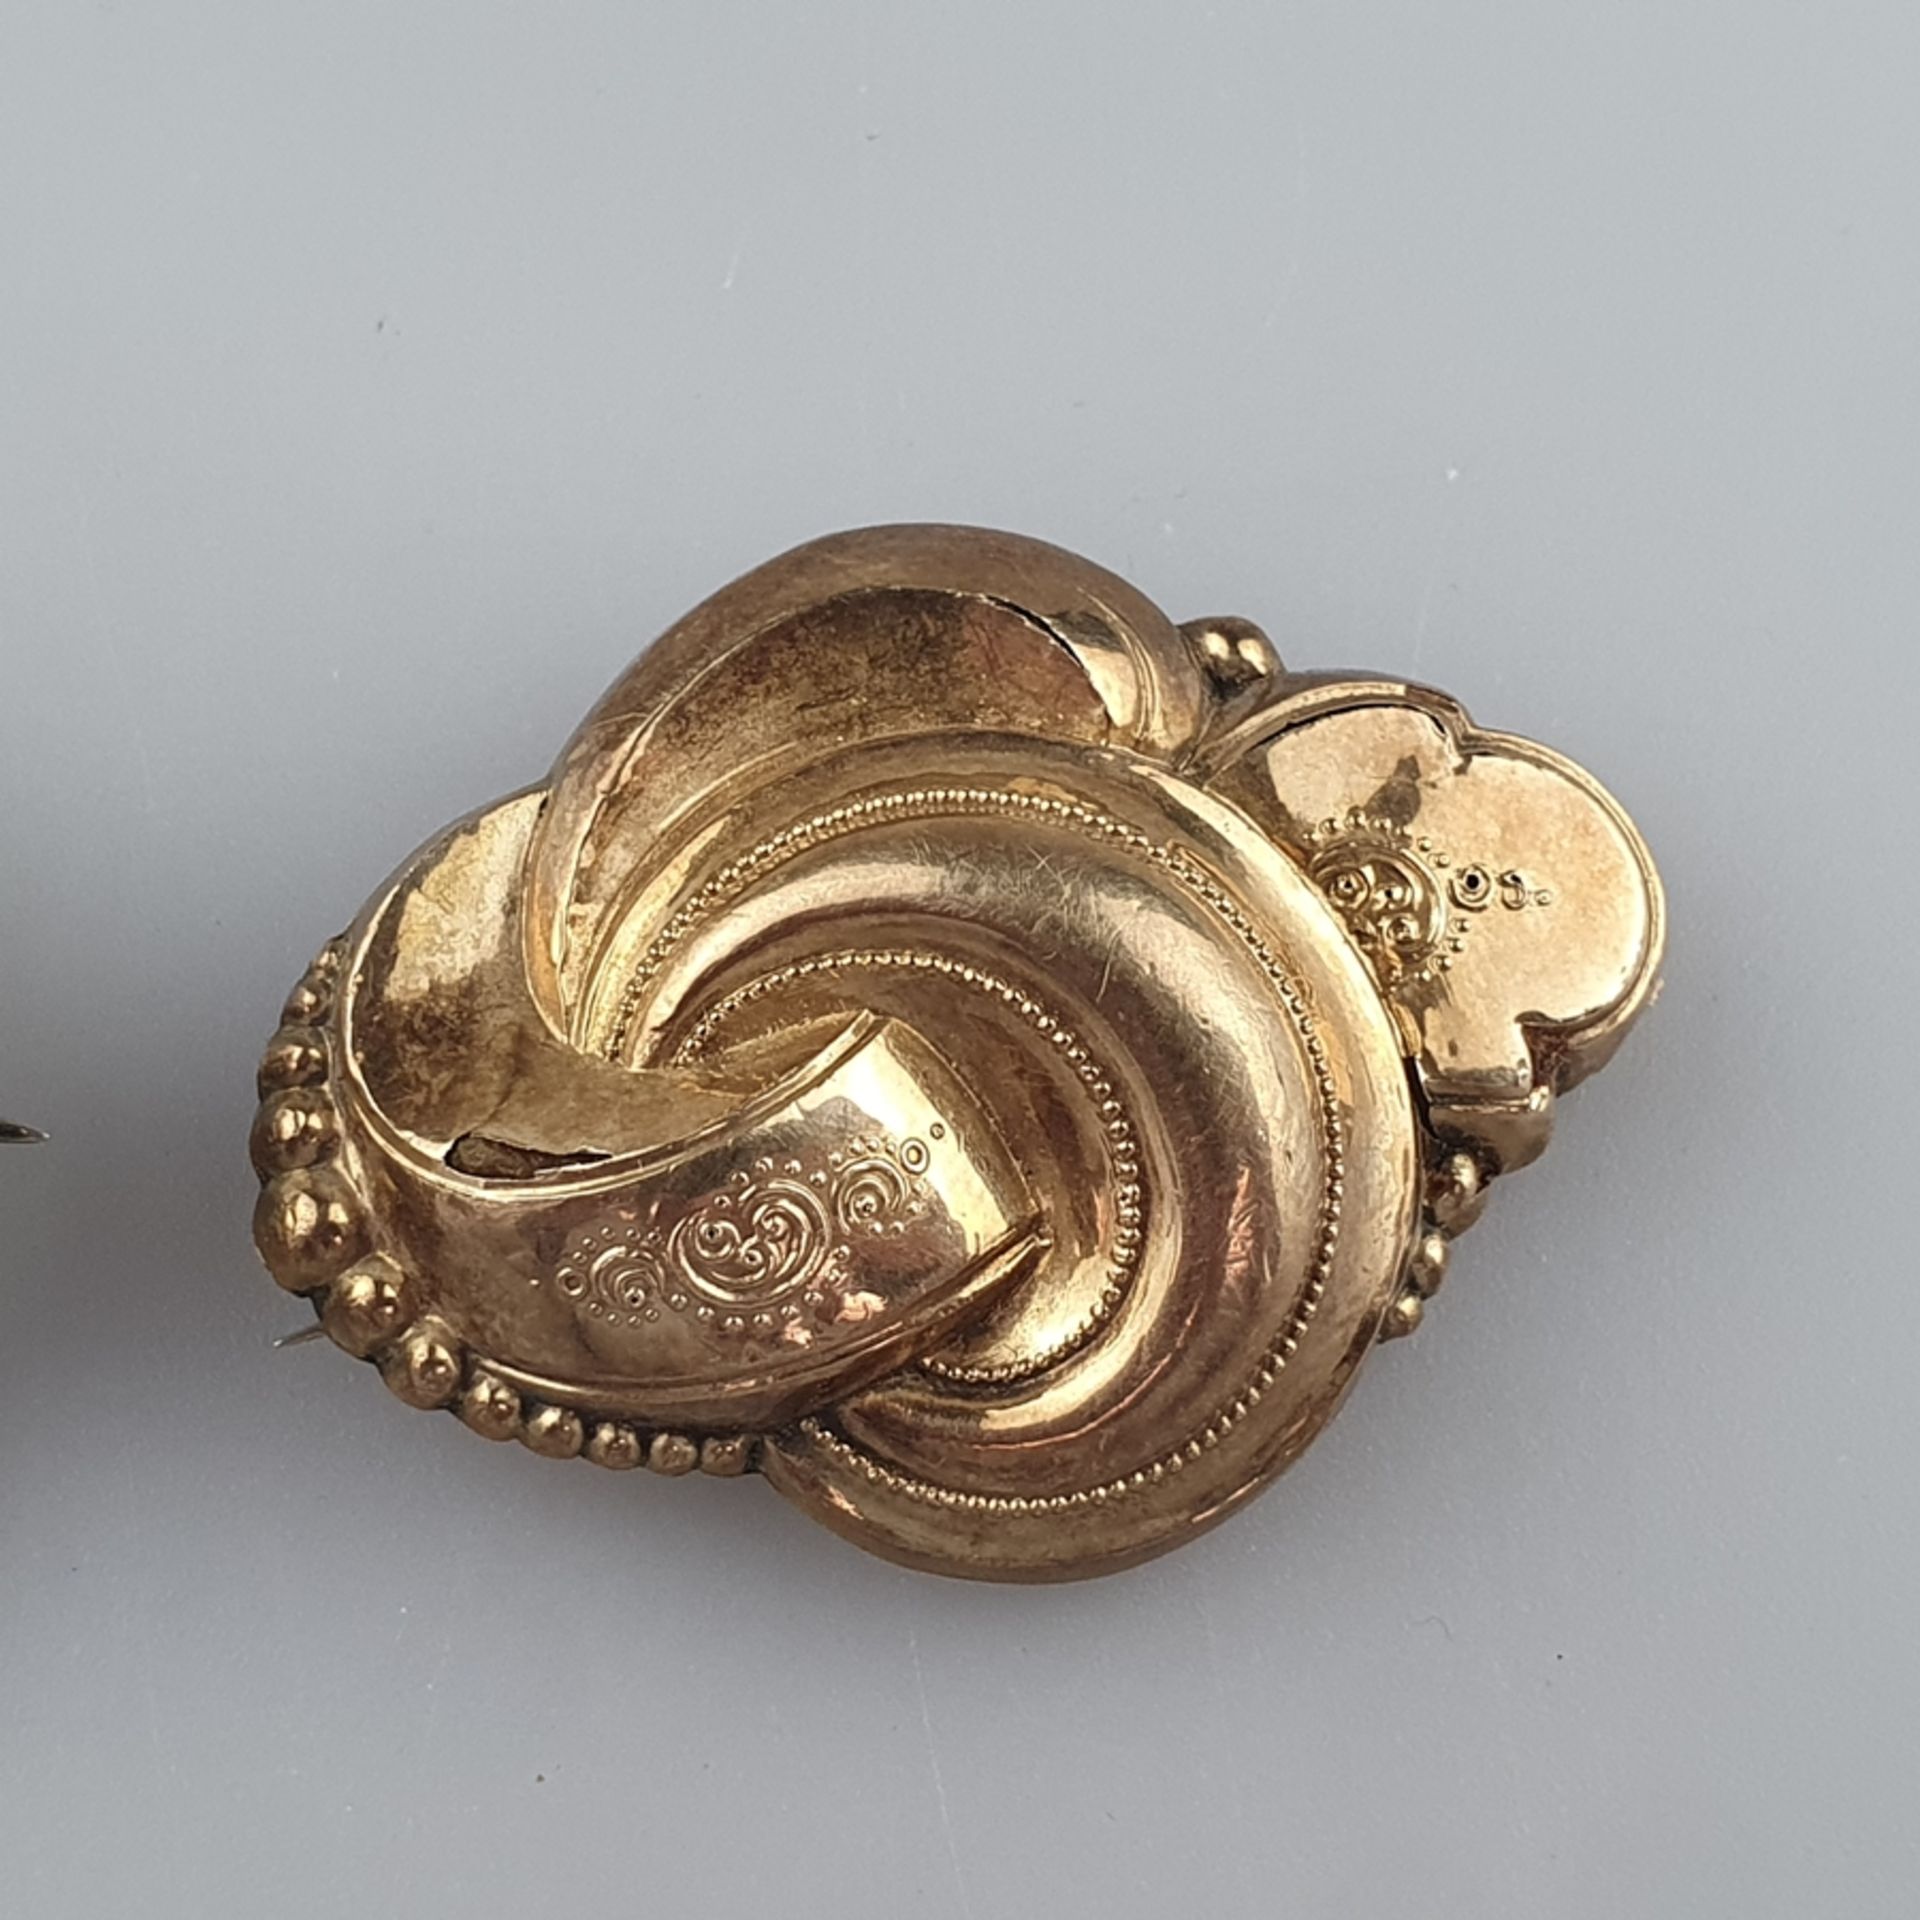 Zwei antike Broschen -19.Jh.- 1 Brosche/Anhänger, Schauseite aus Schaumgold aufwändig dekoriert, ca - Bild 3 aus 4